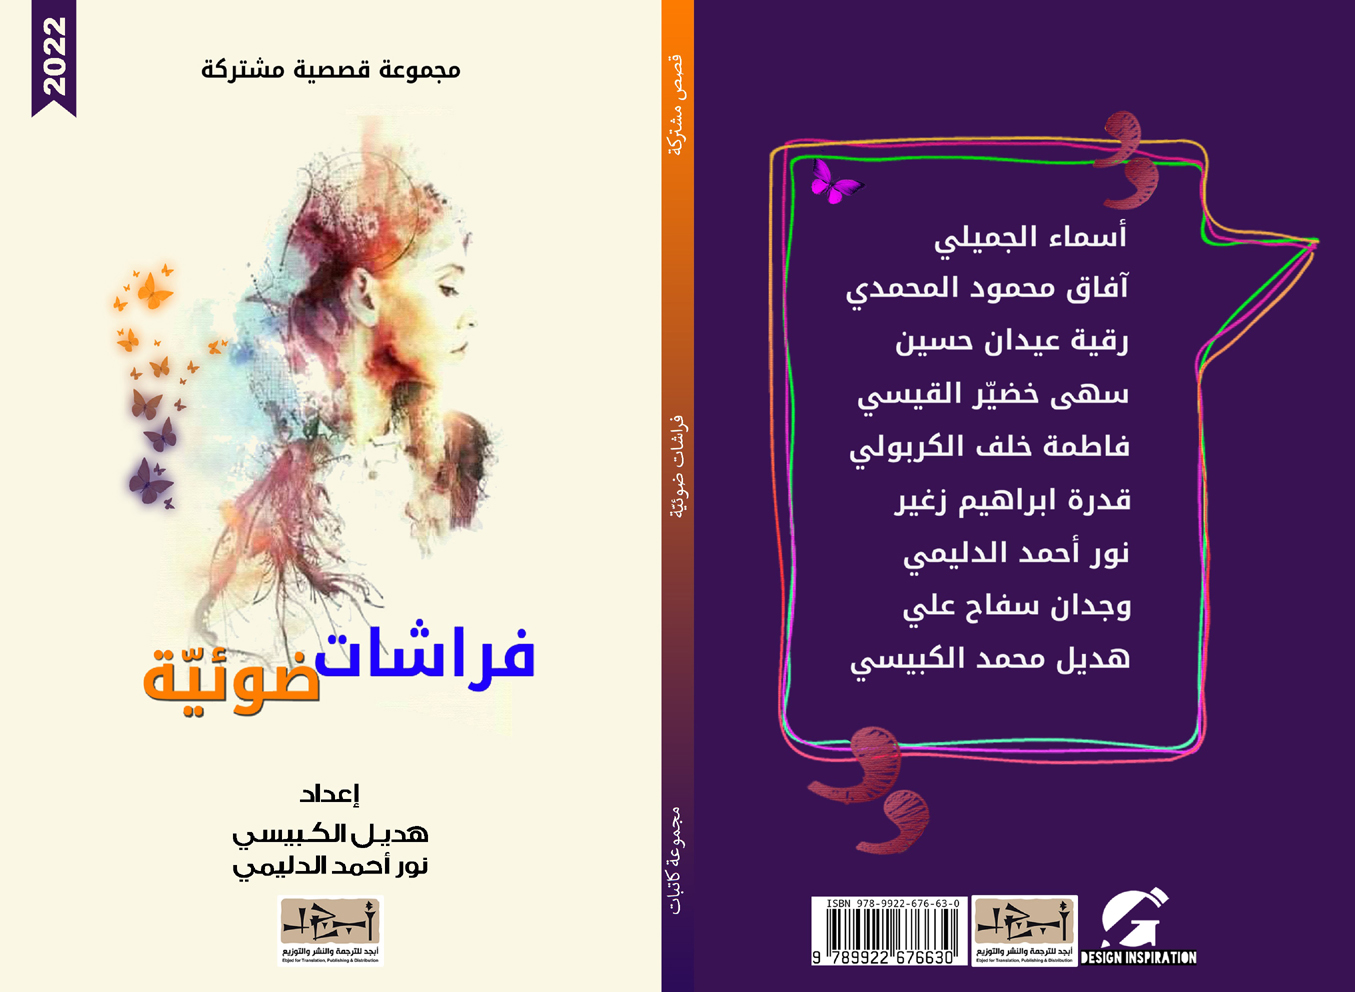 اسم الكتاب: فراشات ضوئية تأليف: مجموعة كاتبات اعداد: هديل الكبيسي و نور احمد الدليمي 